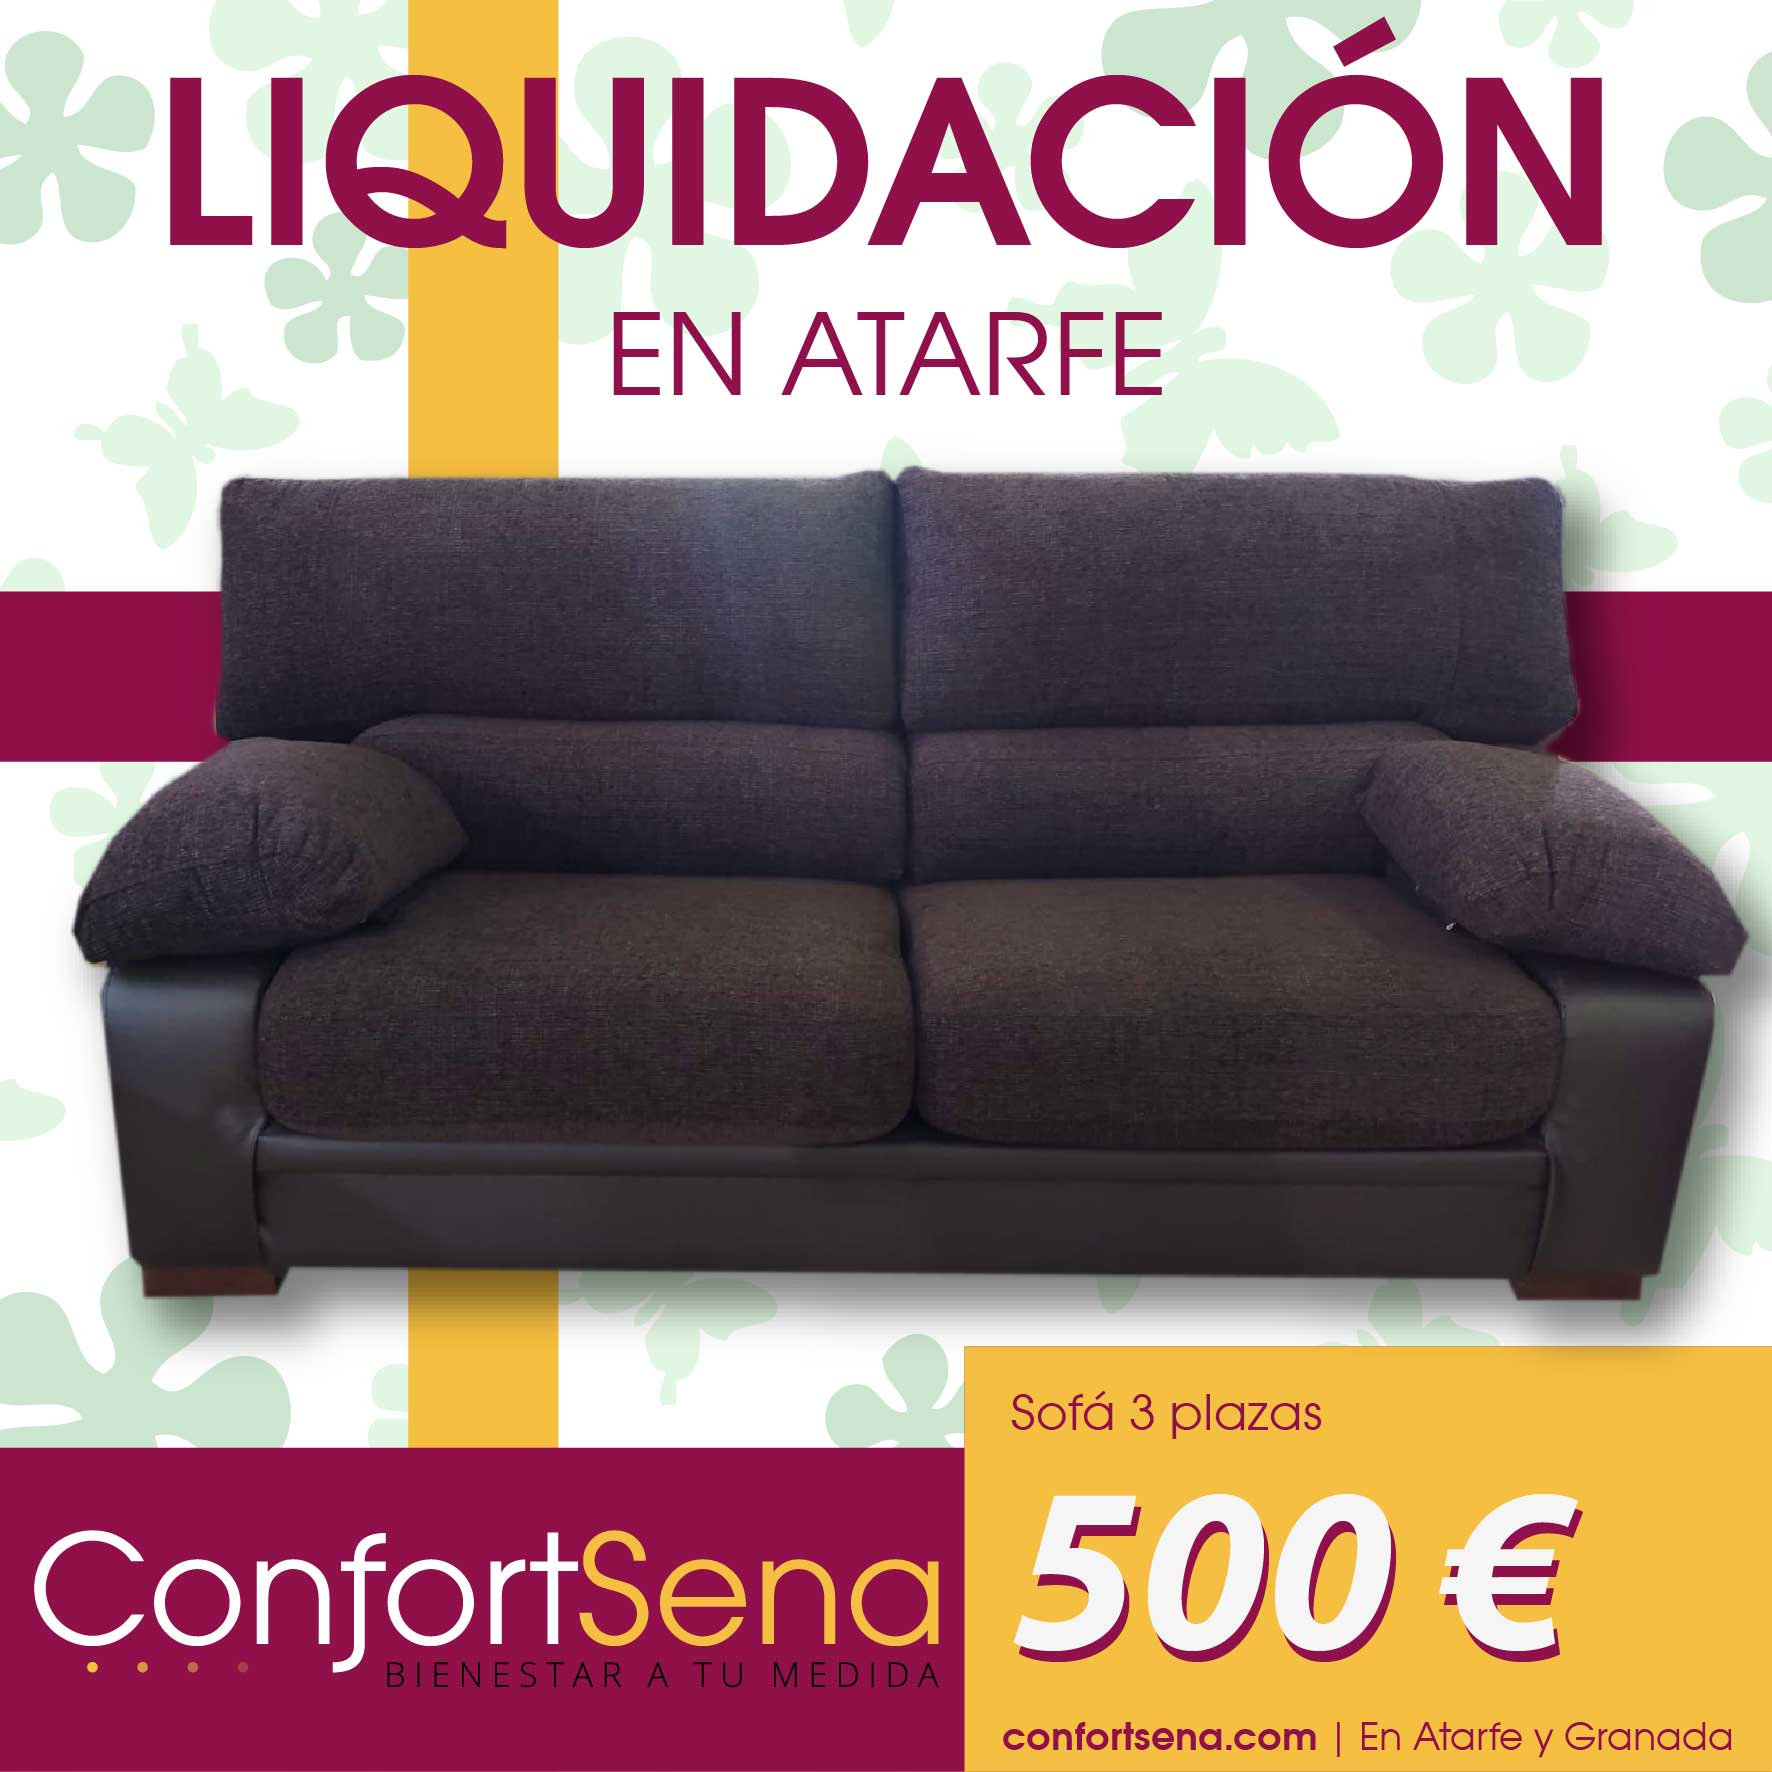 confortsena-ofertas-sofas-de-liquidación-en-atarfe-2